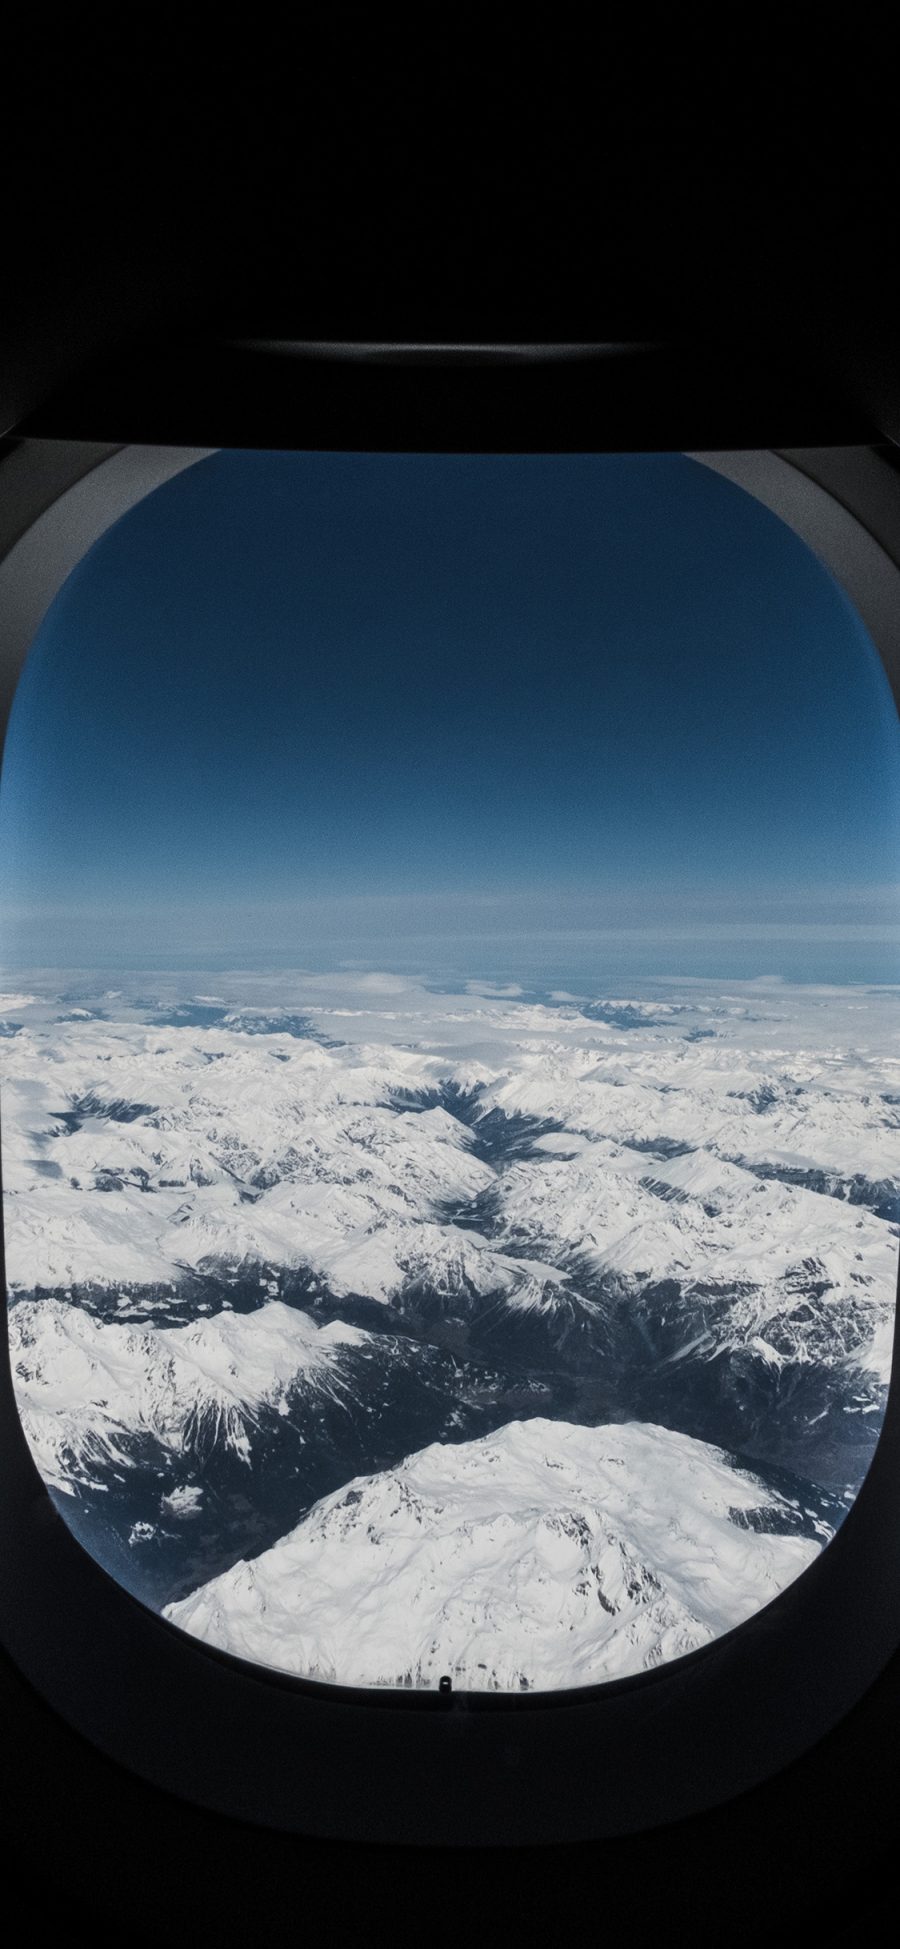 [2436×1125]机窗 风景 山峰 白雪 苹果手机壁纸图片